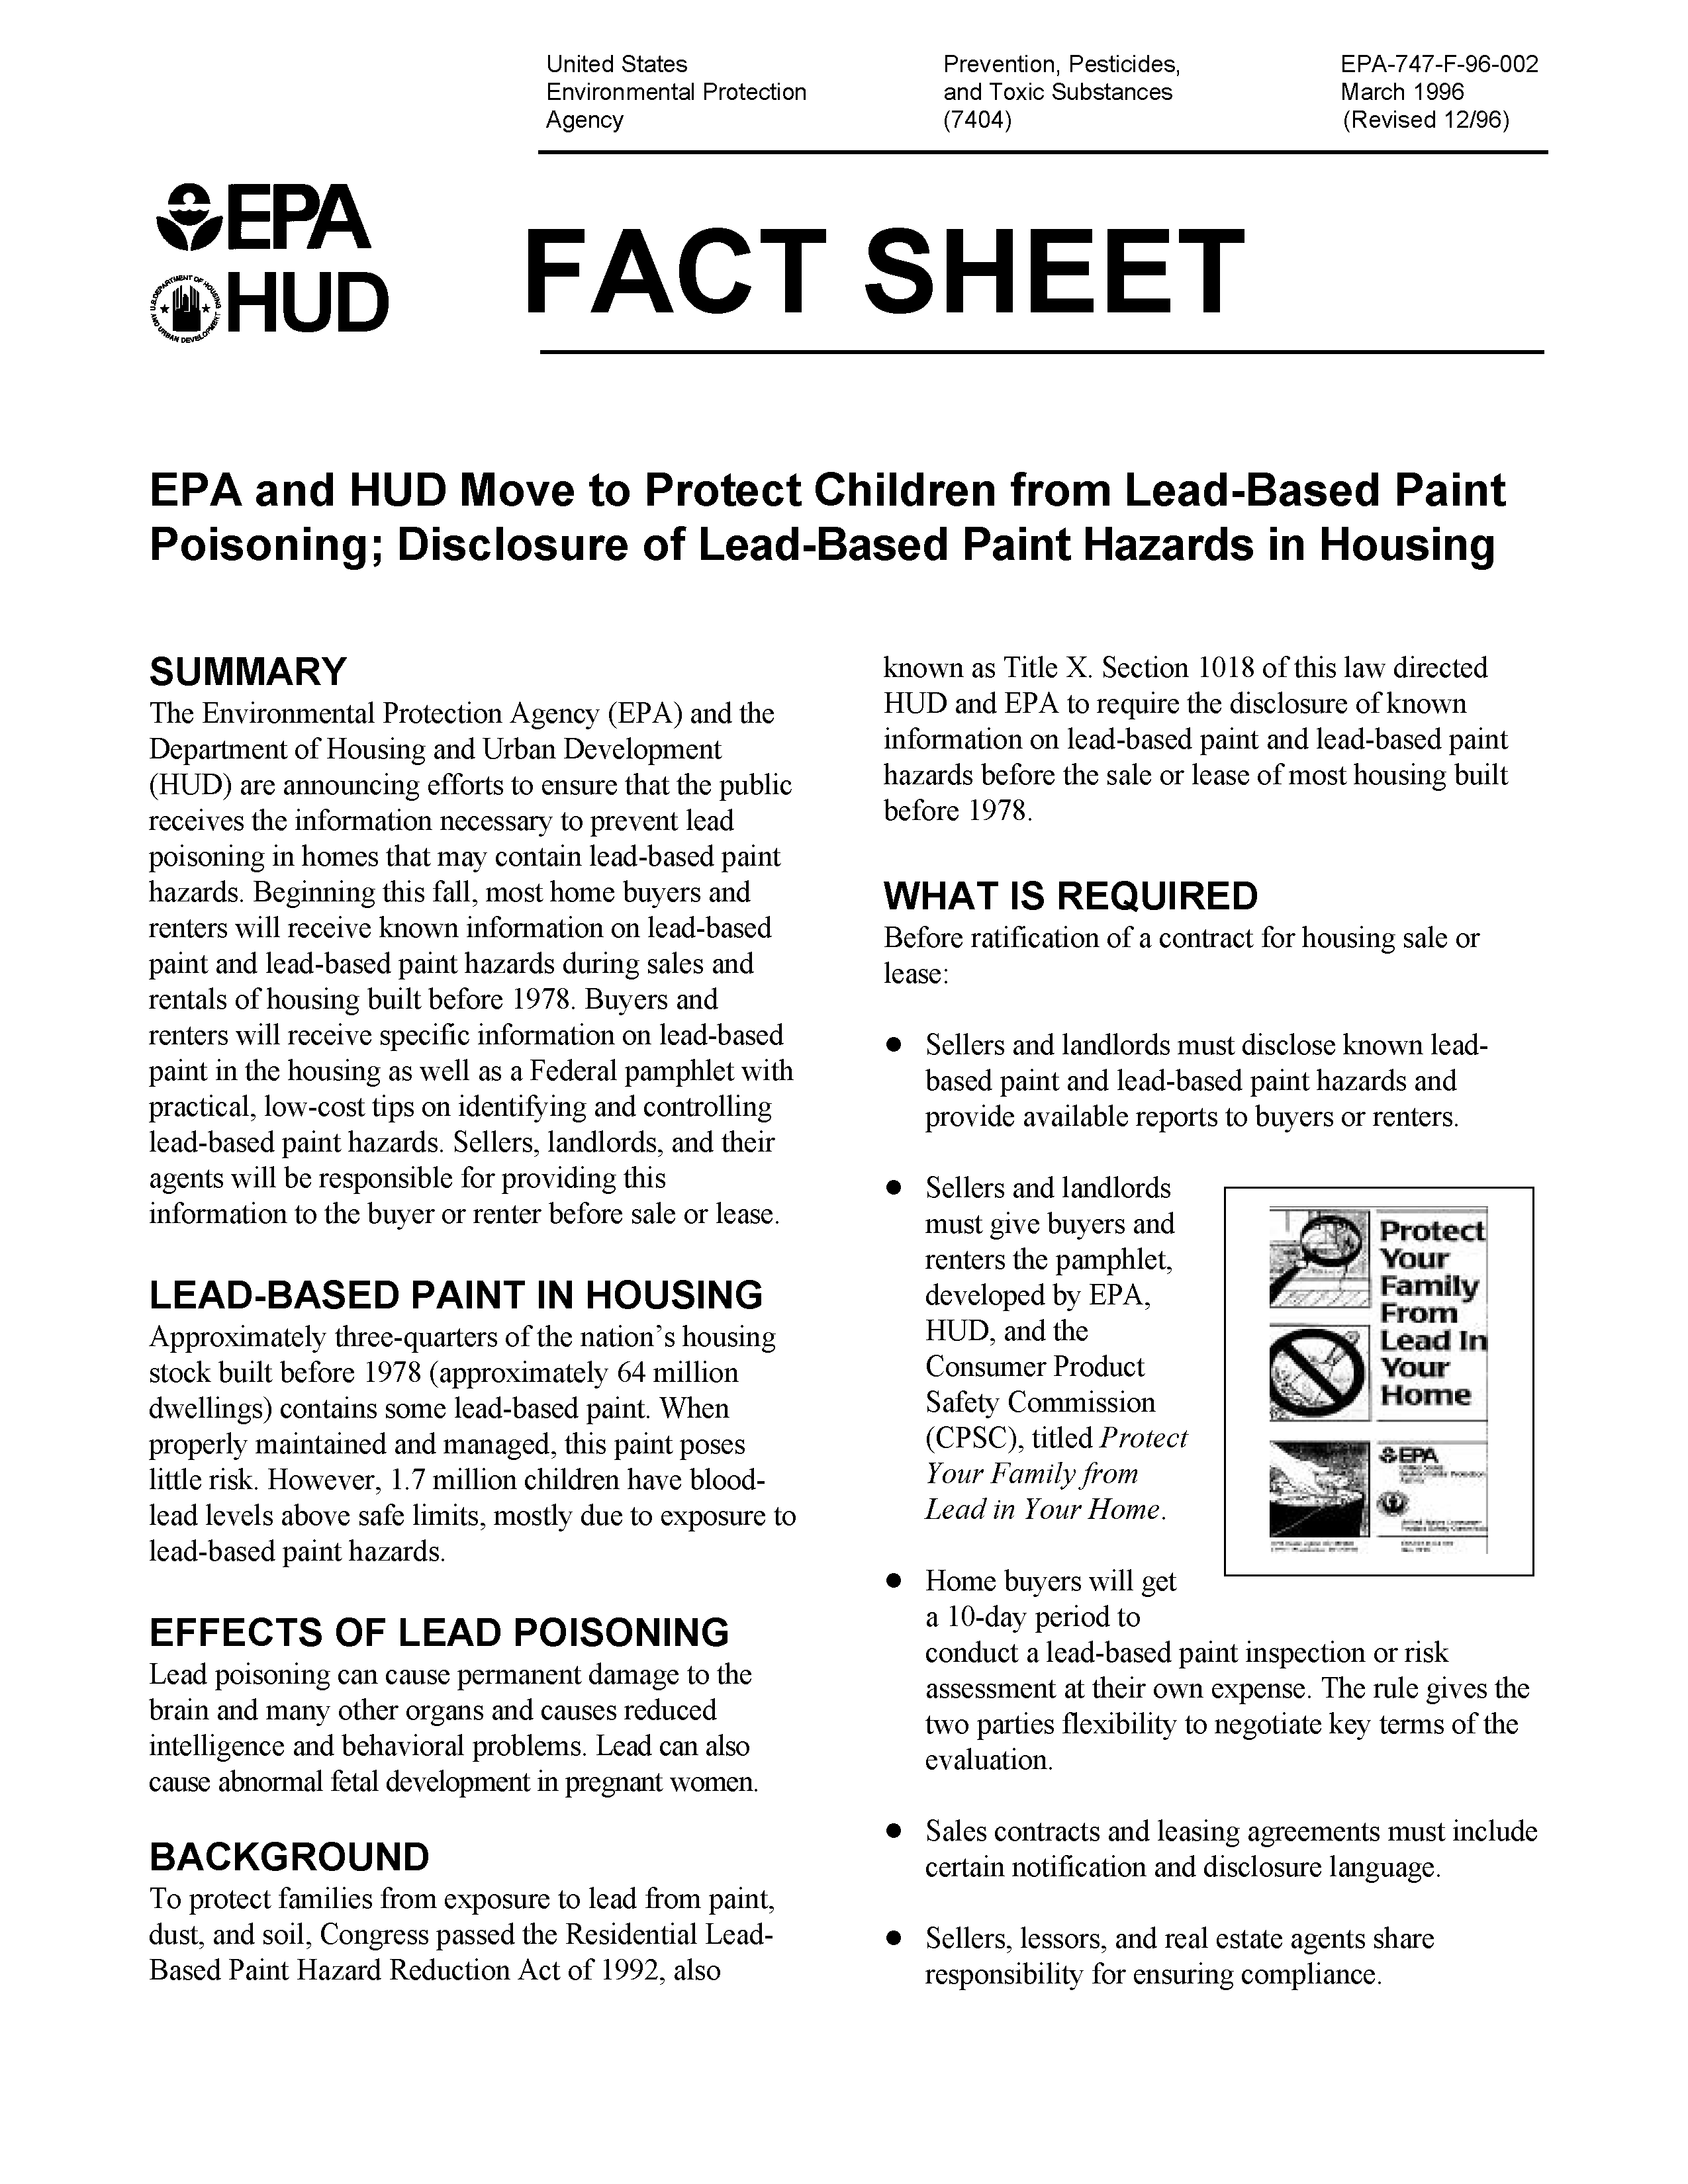 HUD Fact Sheet Page 1